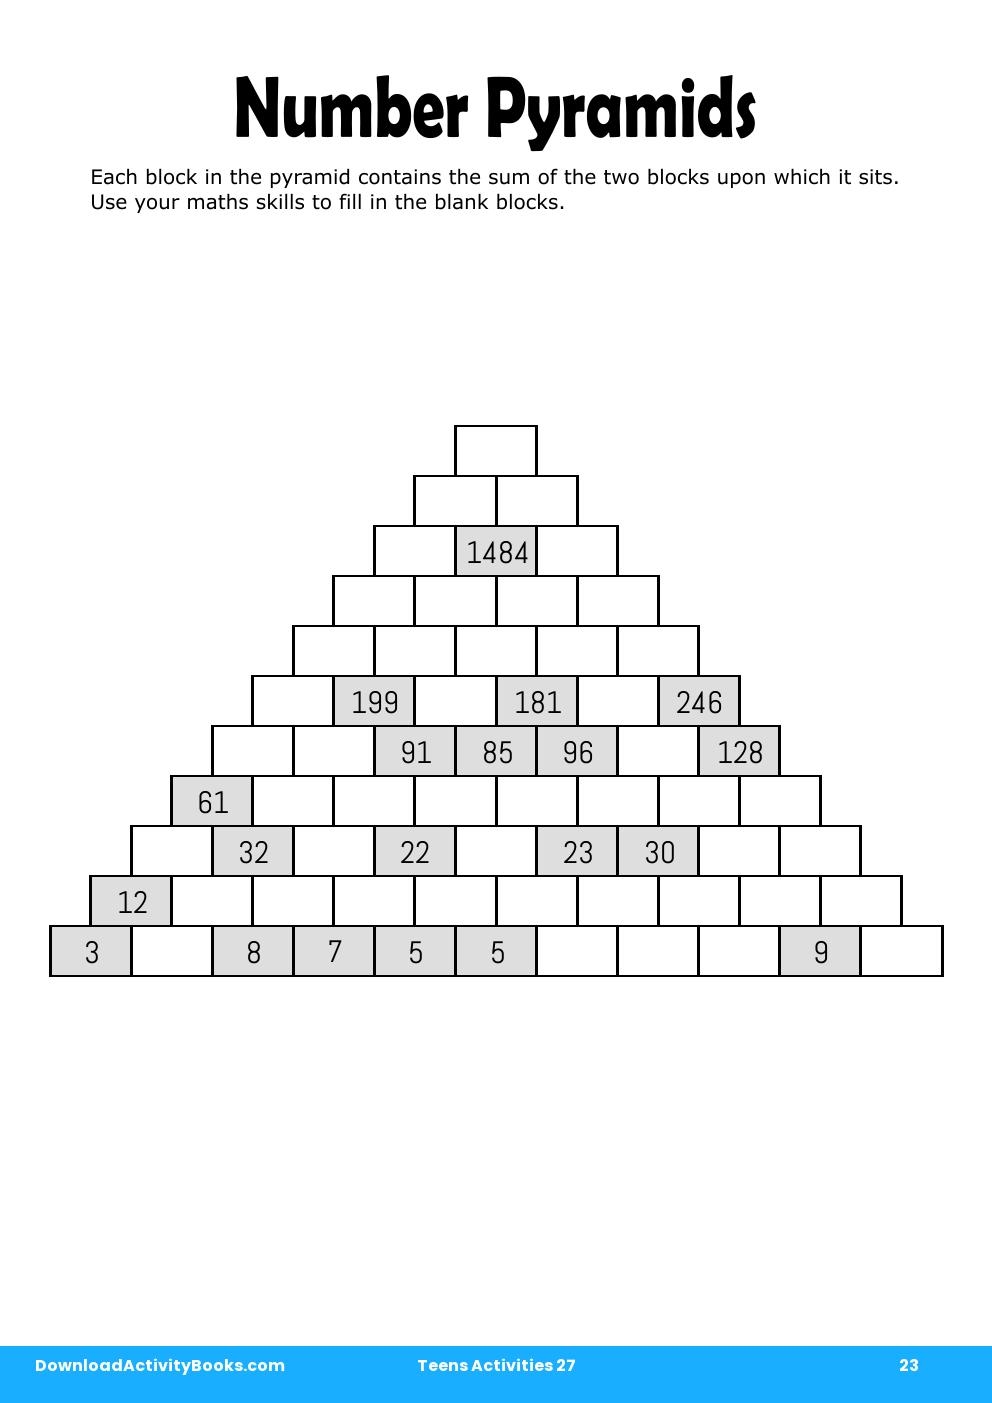 Number Pyramids in Teens Activities 27